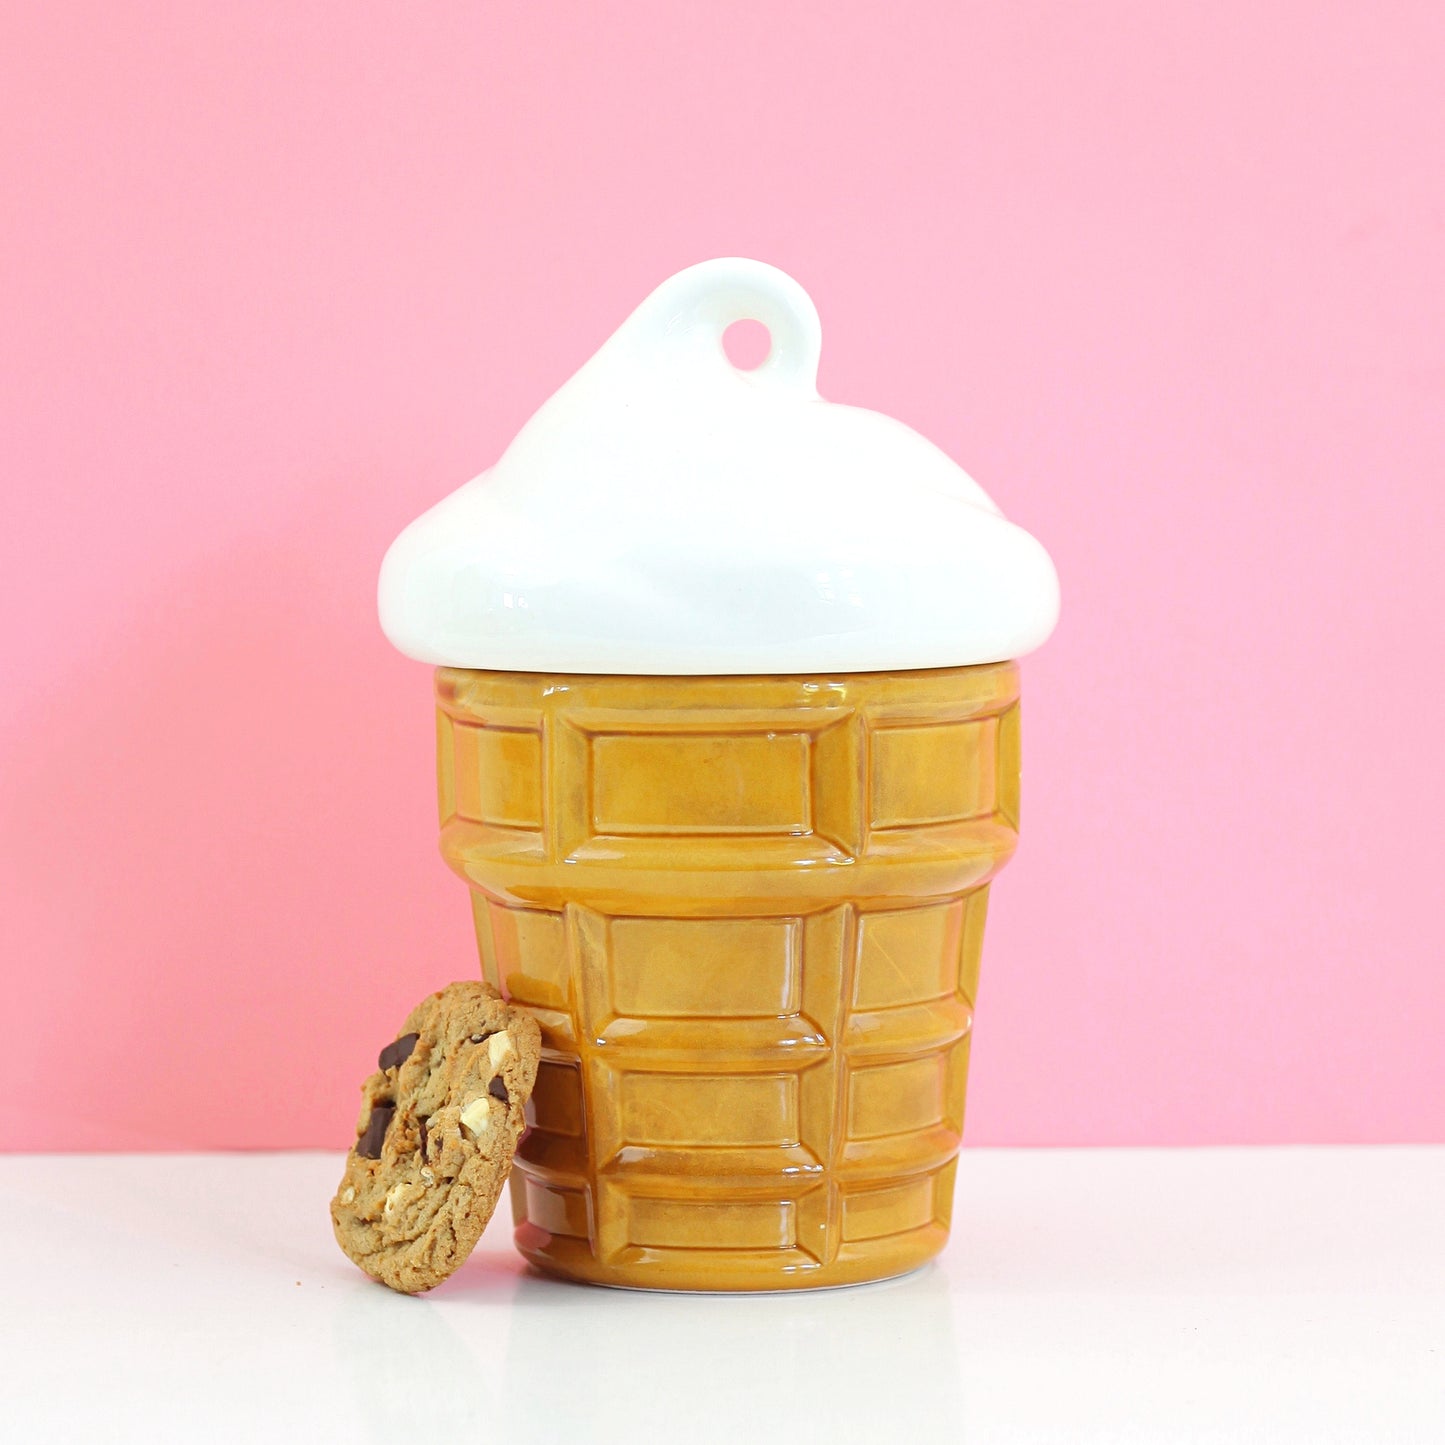 SOLD - Vintage Ceramic Ice Cream Cone Cookie Jar